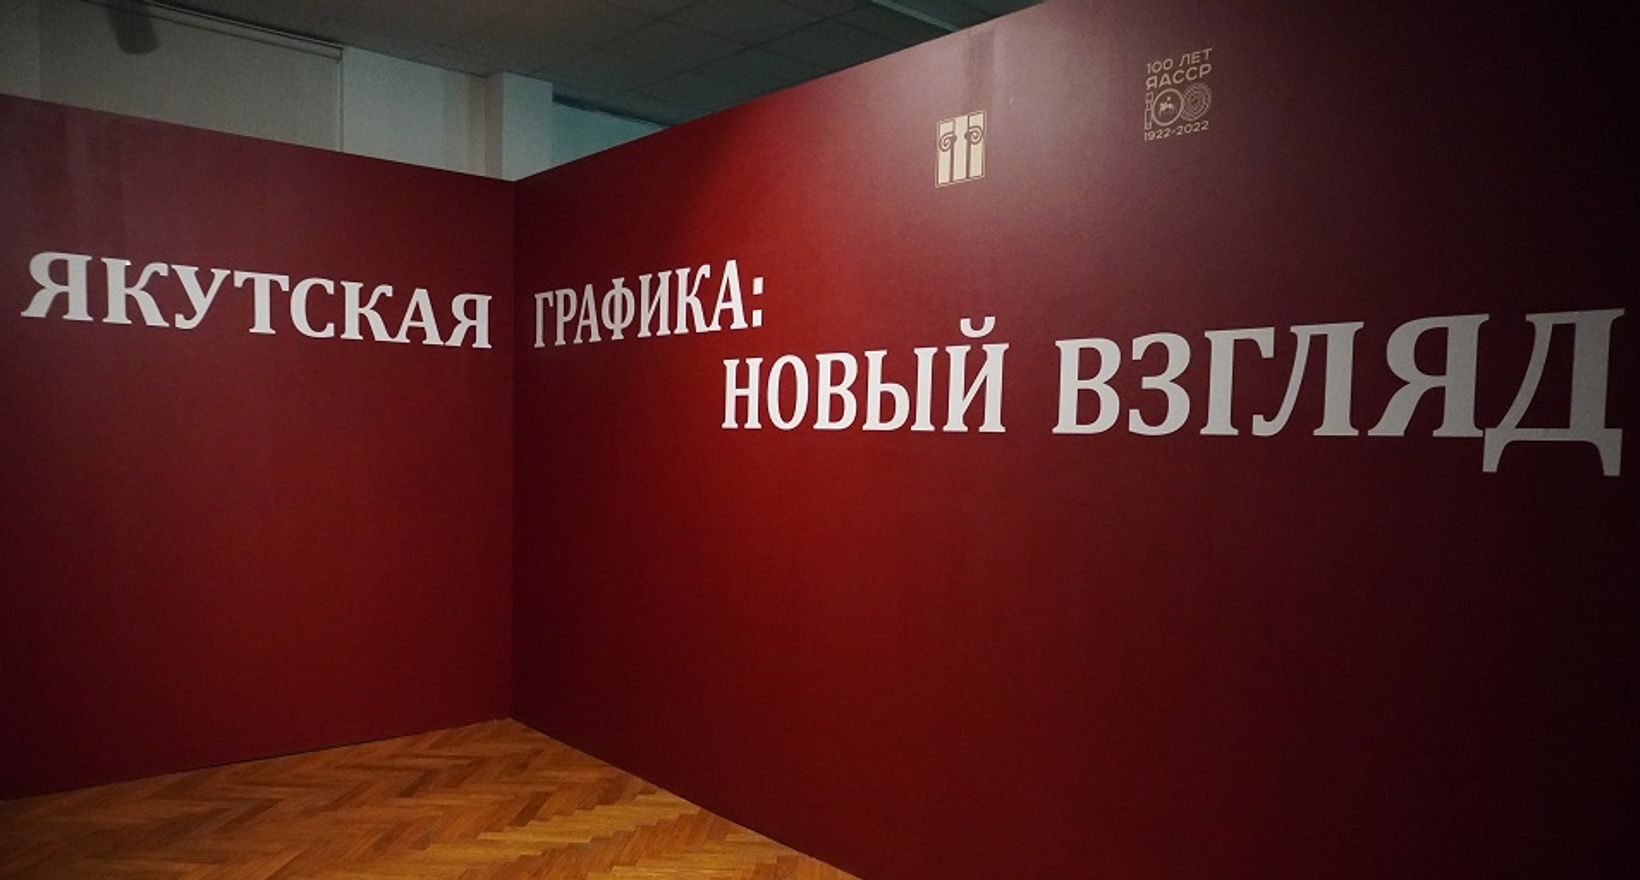 Вход на экспозицию "Якутская графика: новый взгляд"